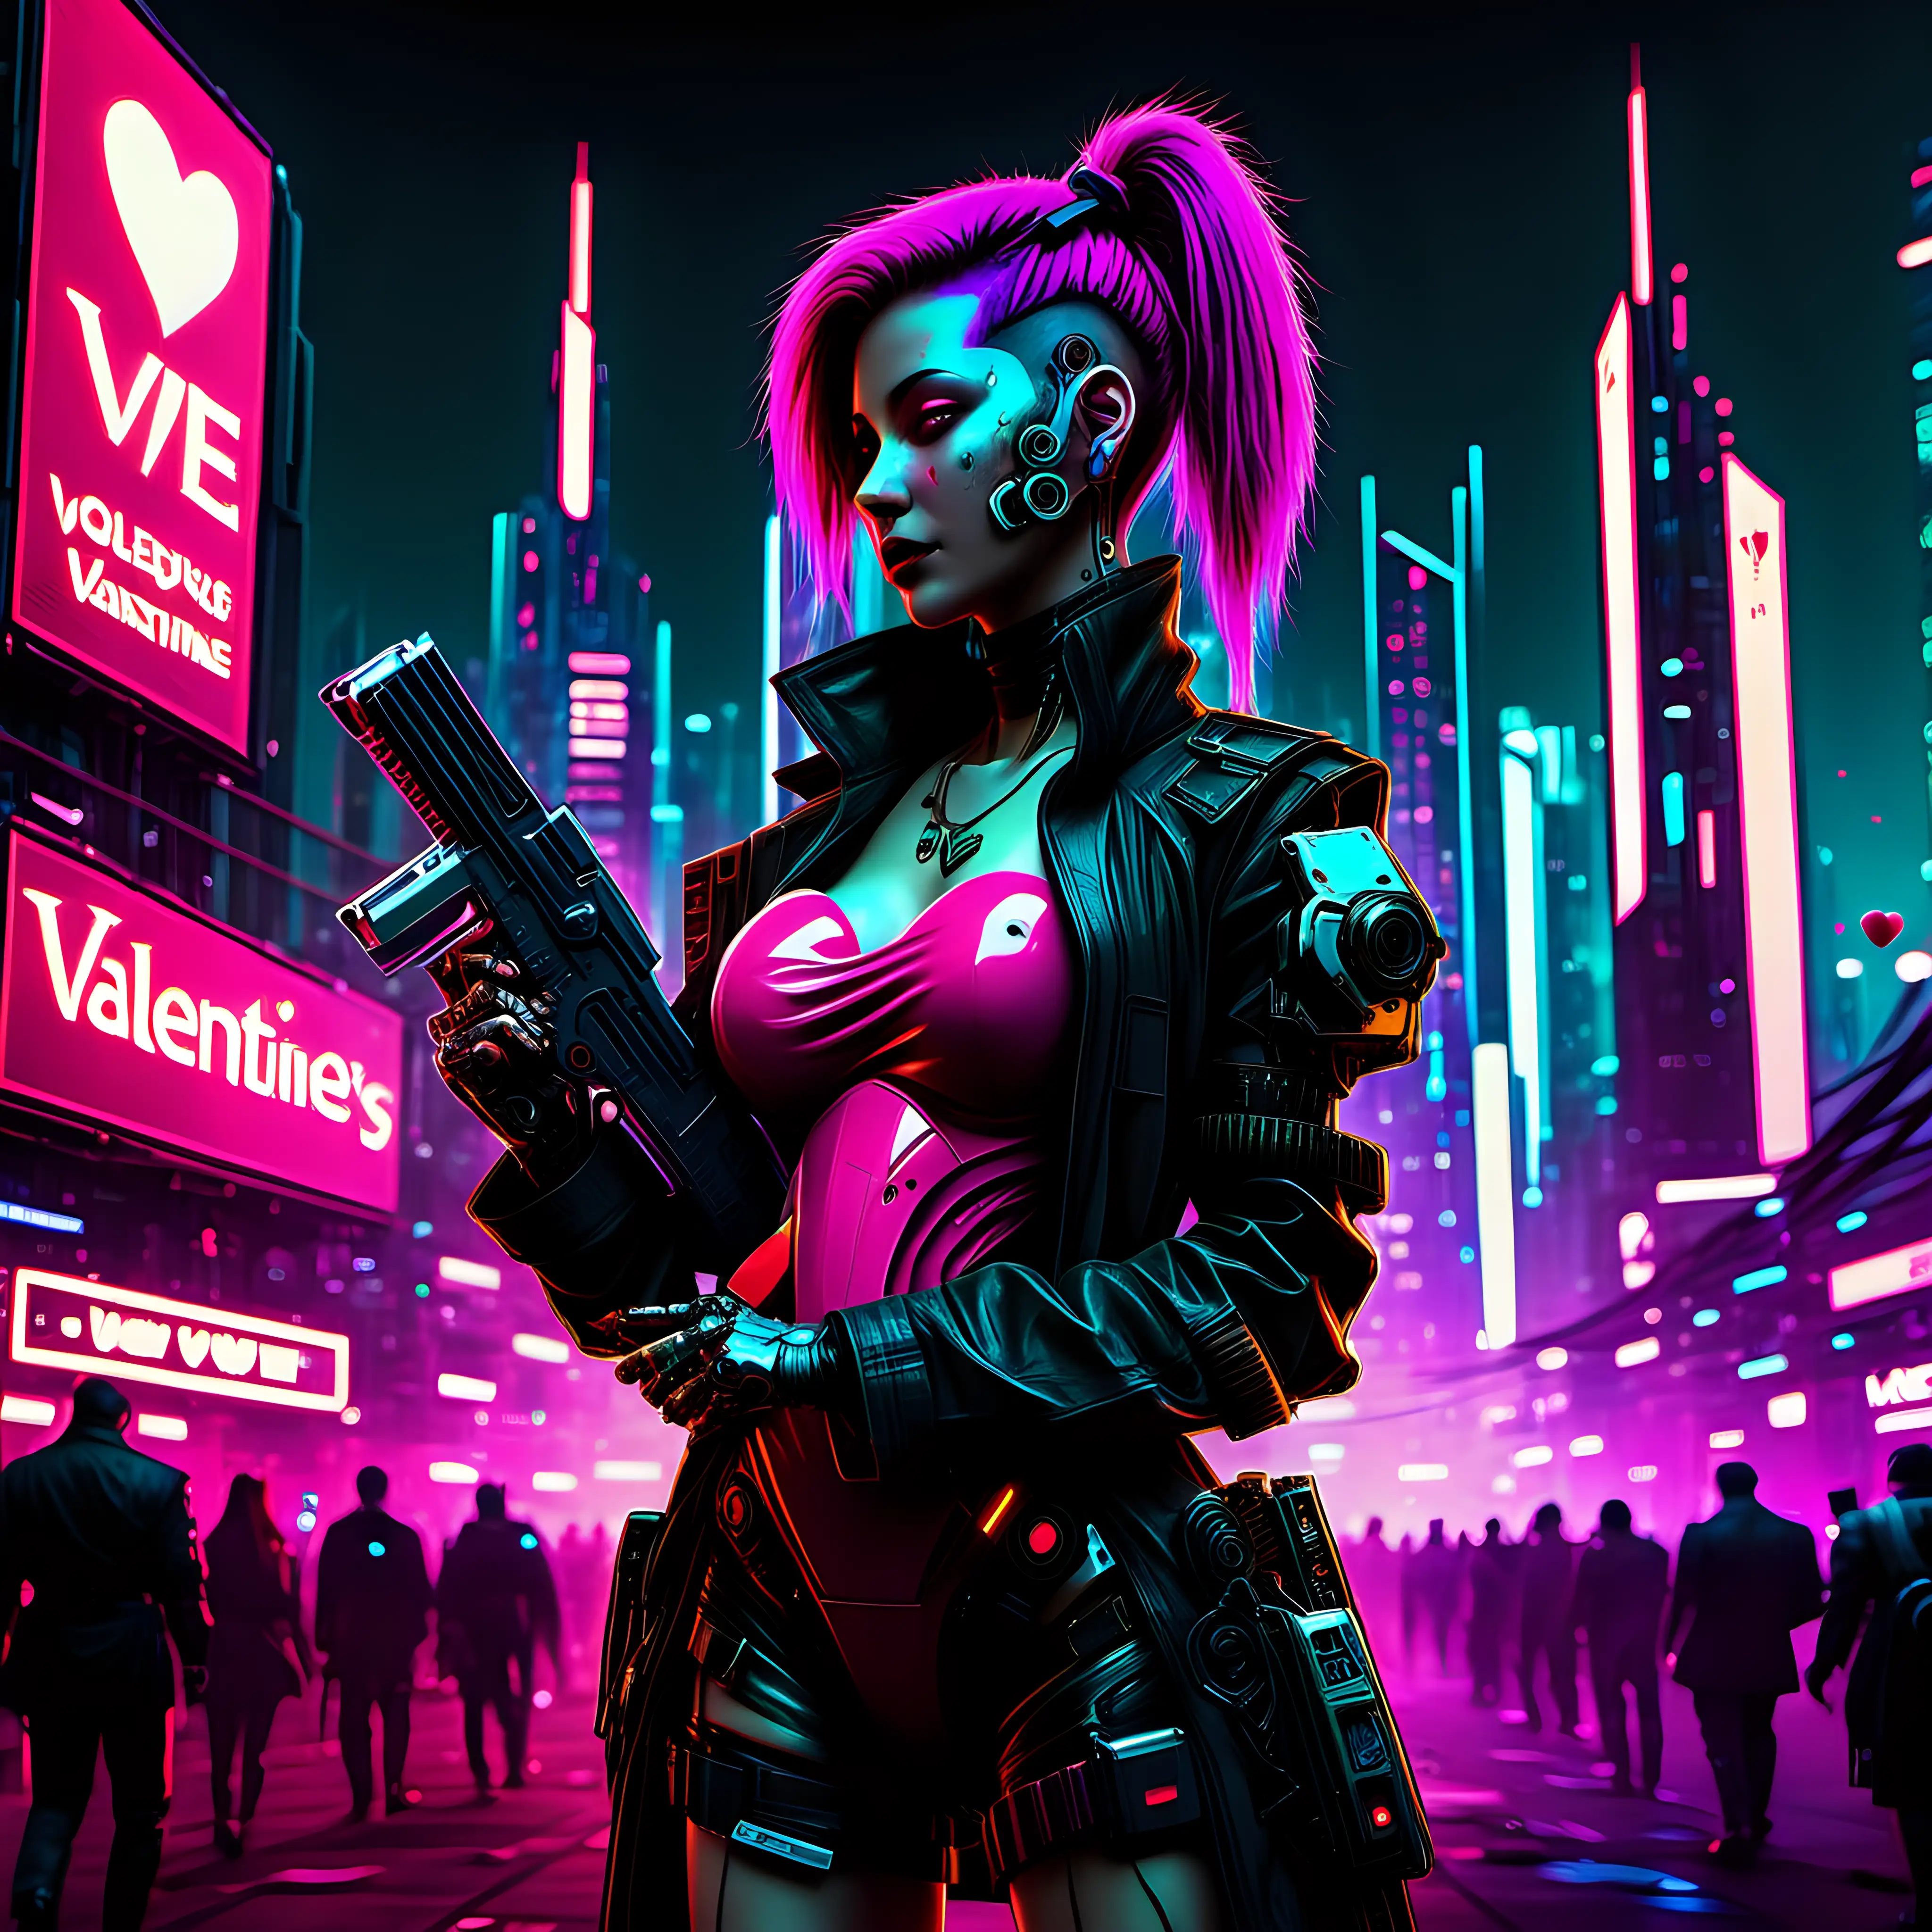 Futuristic Cyberpunk Love in a Neon Cityscape